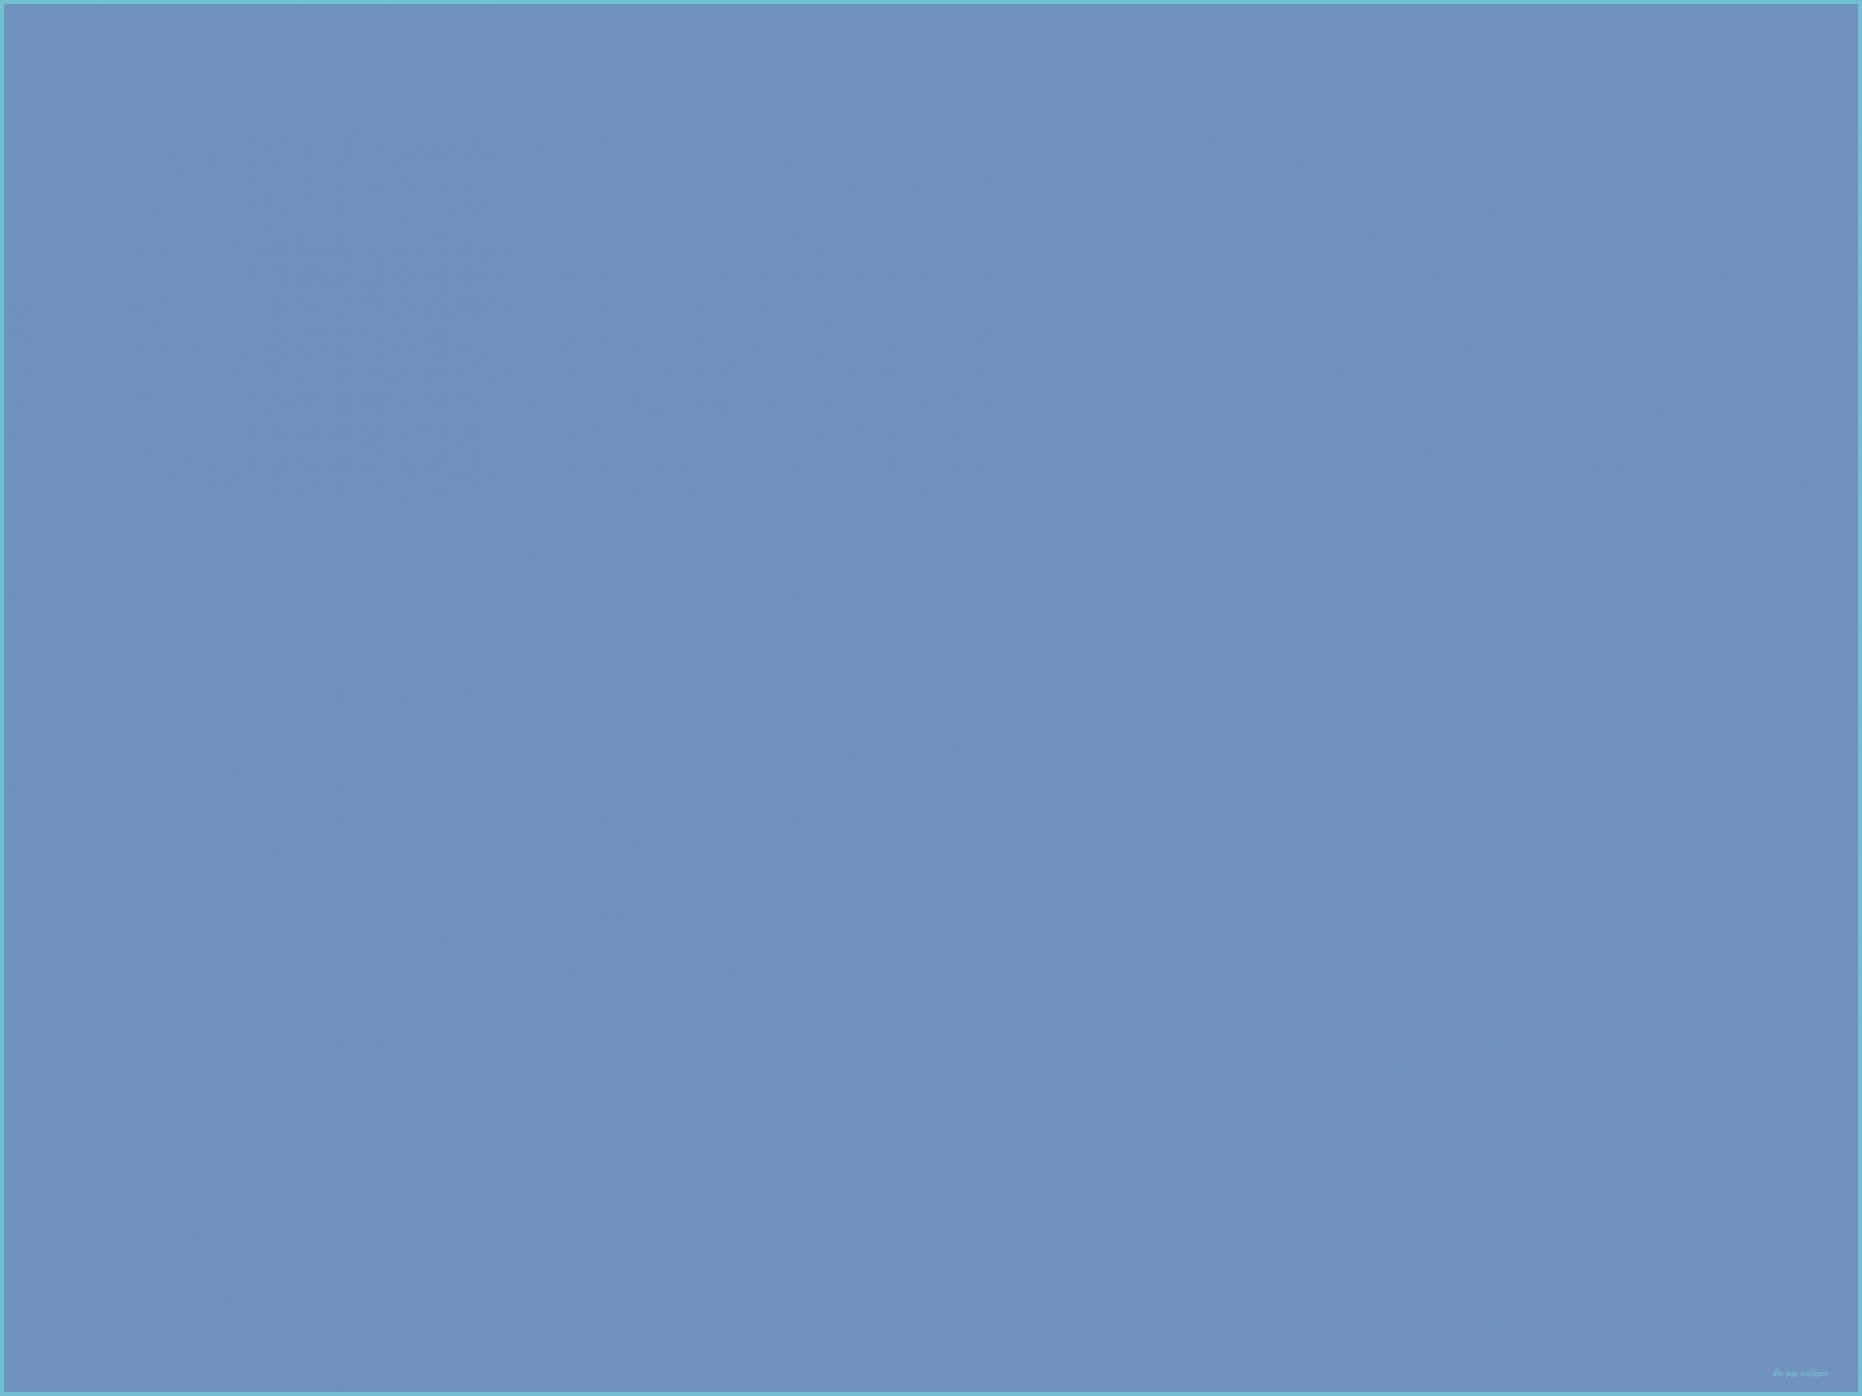 Uncuadrado Azul Con Un Cuadradito En El Centro. Fondo de pantalla